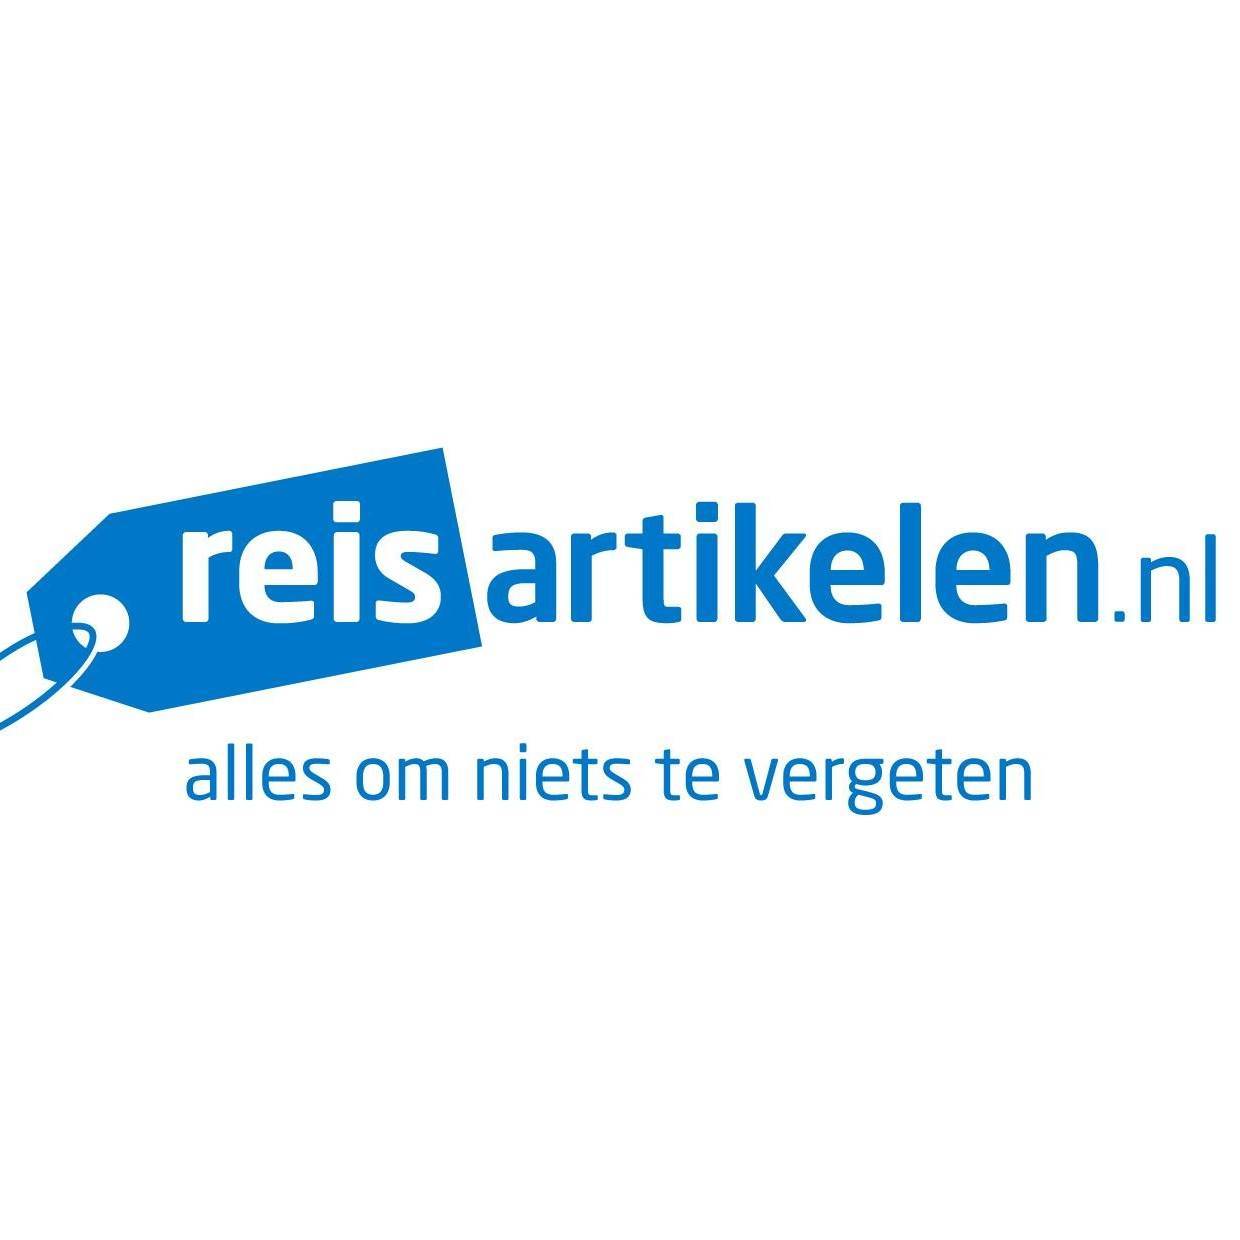 Reisartikelen.nl reviews, beoordelingen en ervaringen